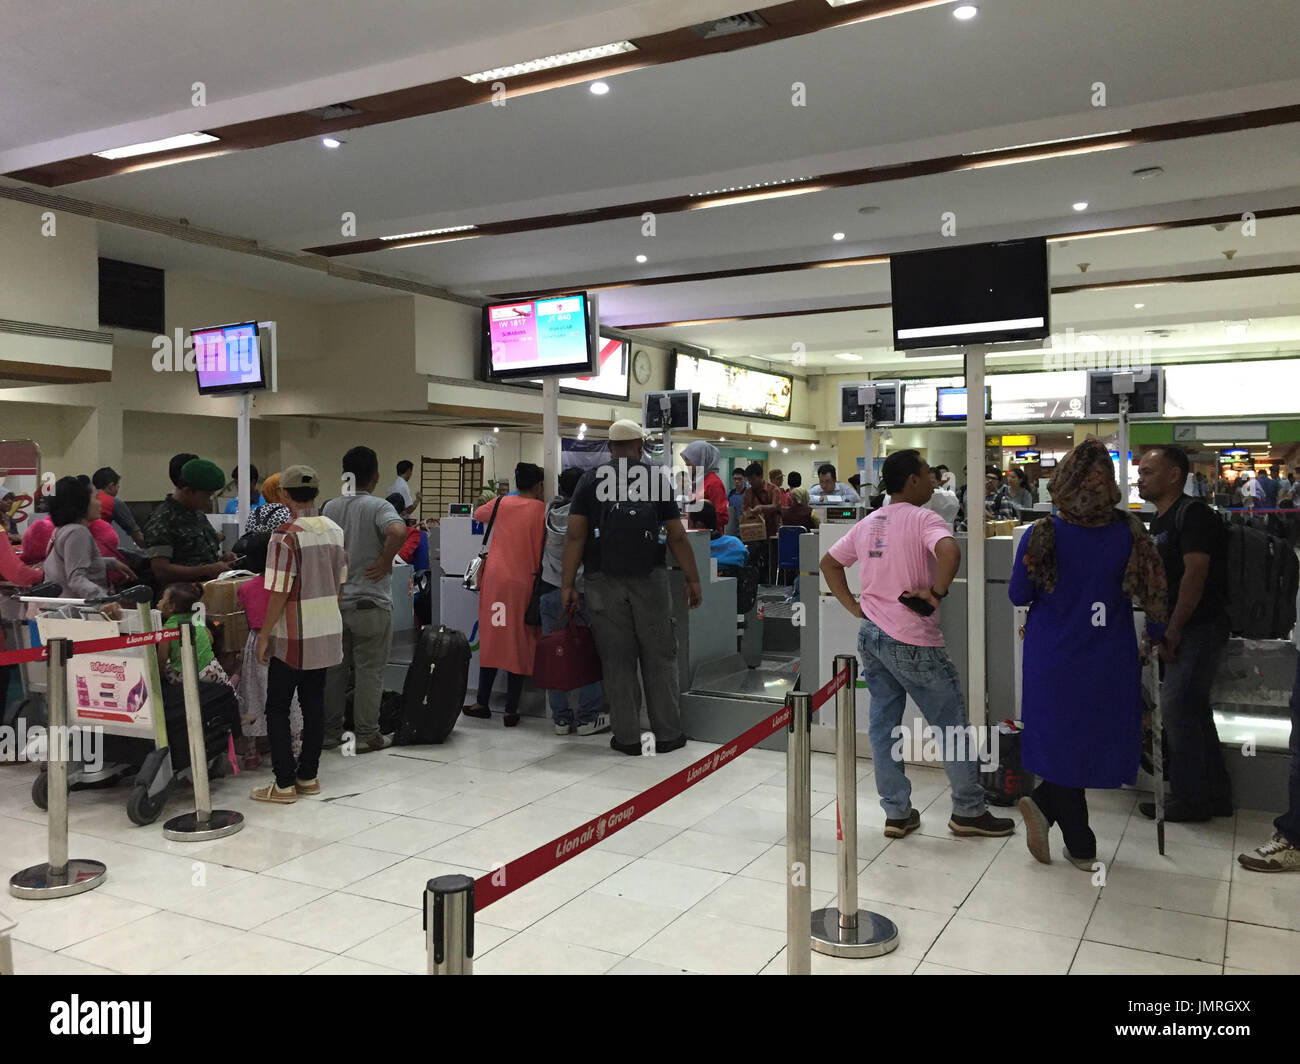 Yogyakarta, Indonesia - Apr 15, 2016. Passengers waiting at Adisutjipto Airport in Yogyakarta, Indonesia. The Airport is the 4th busiest airport in th Stock Photo